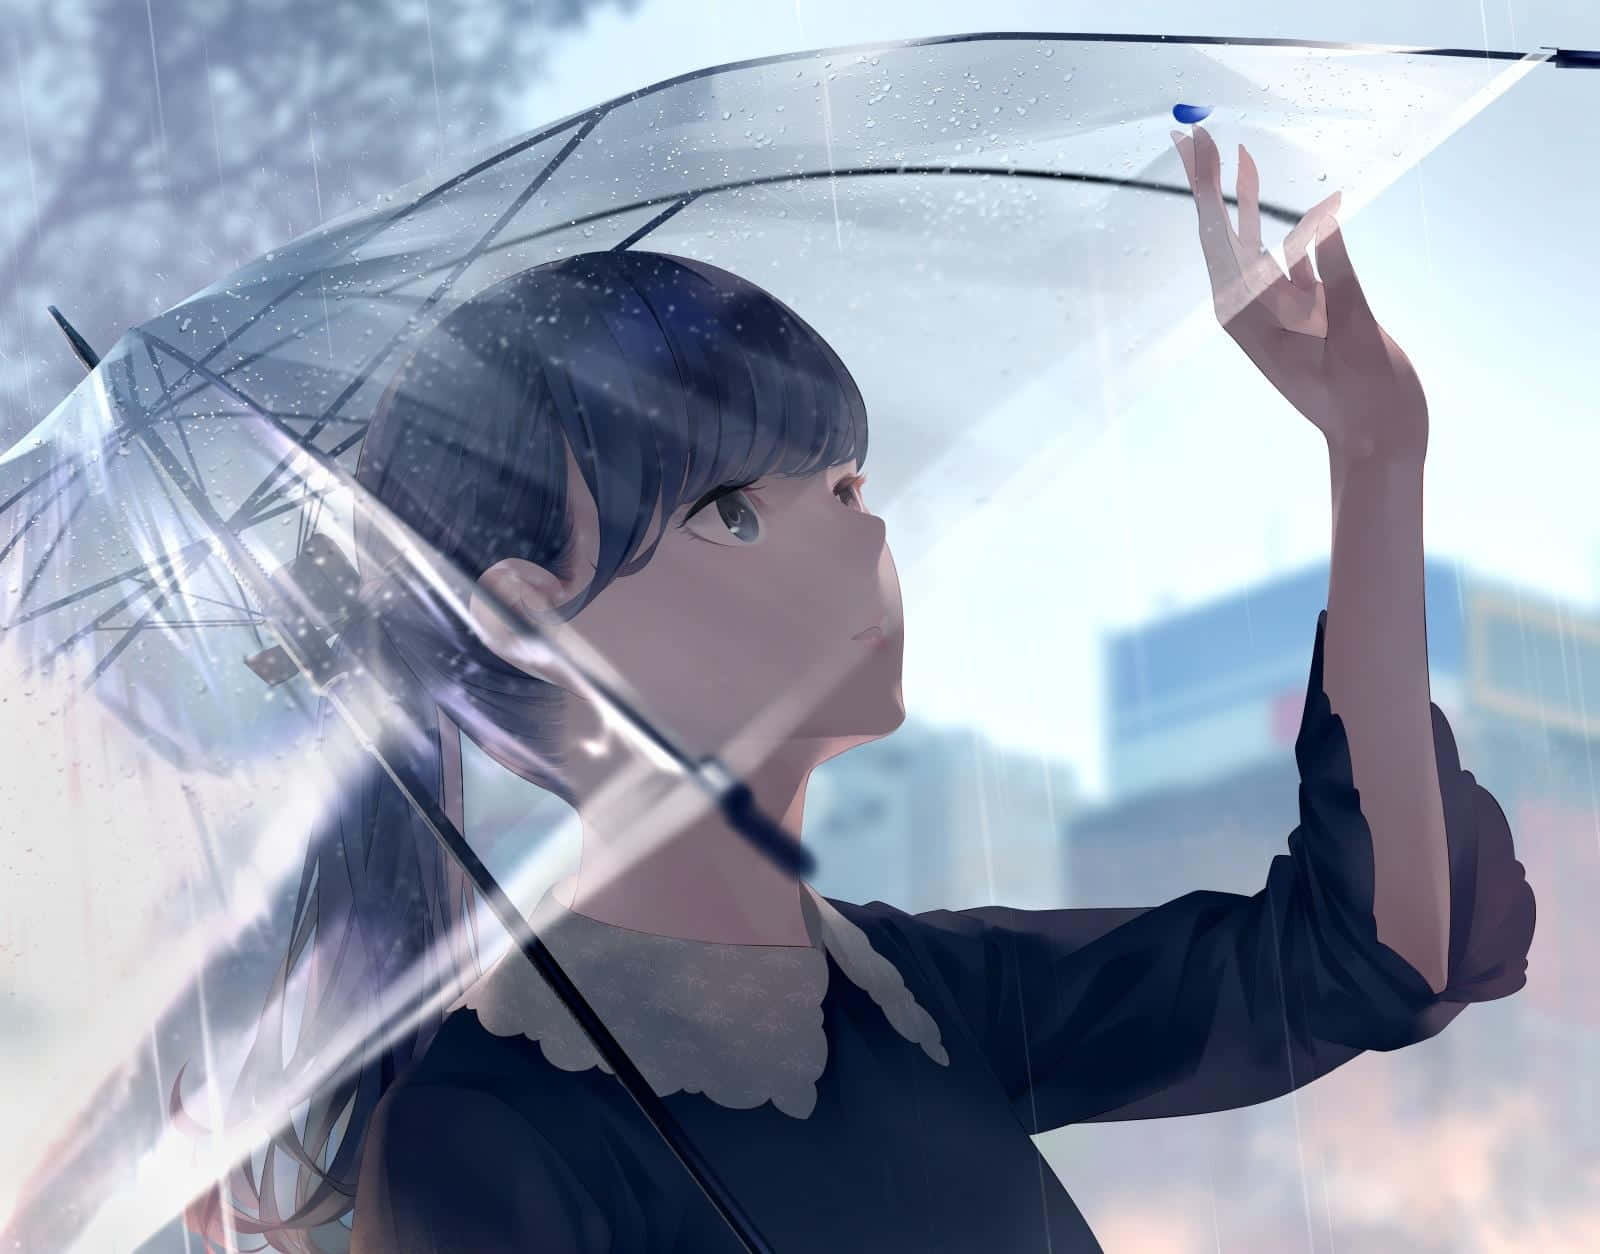 Imagende Perfil De Una Chica De Anime Con Un Paraguas.